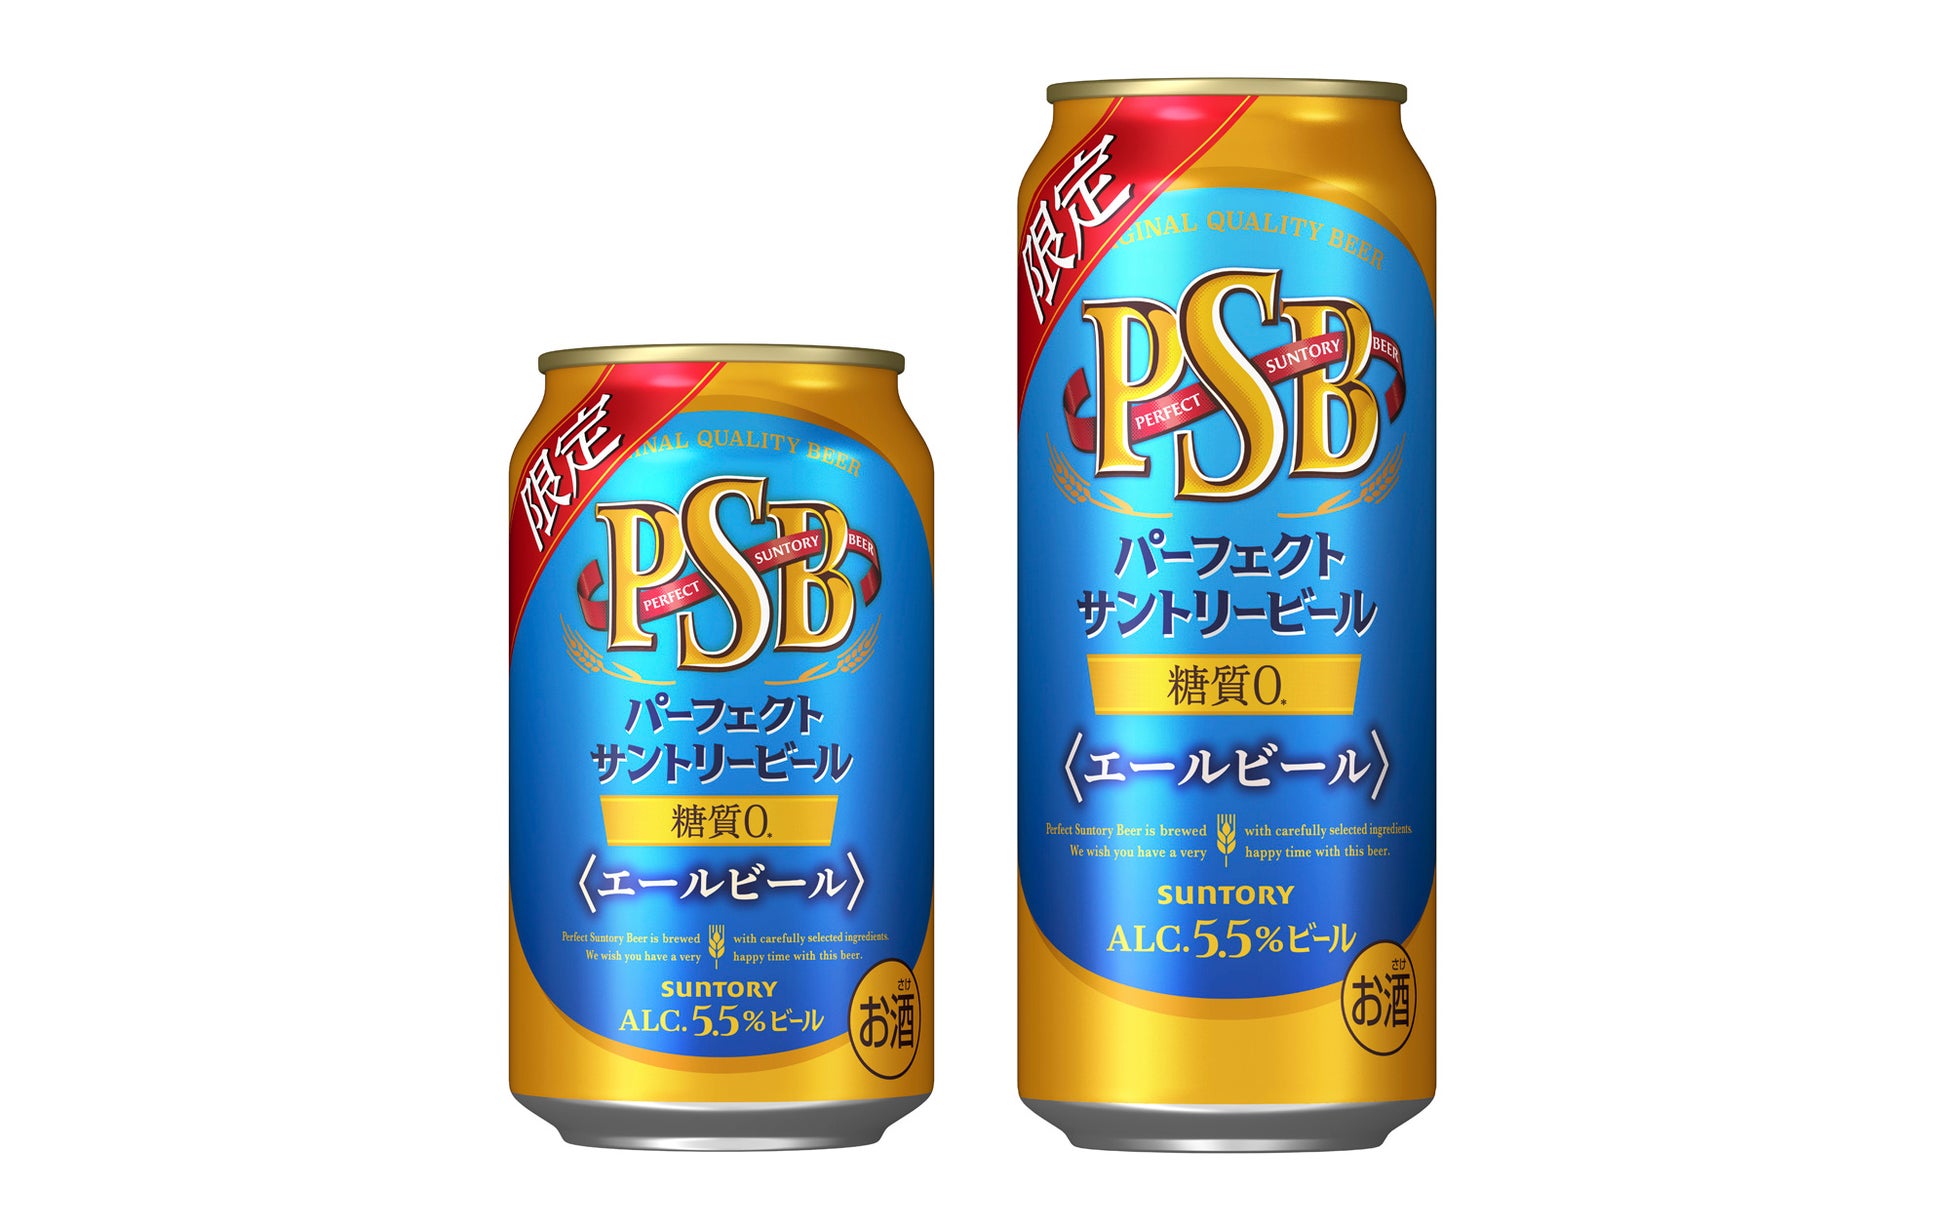 糖質ゼロ※のエールビール「パーフェクトサントリービール〈エールビール〉」数量限定新発売